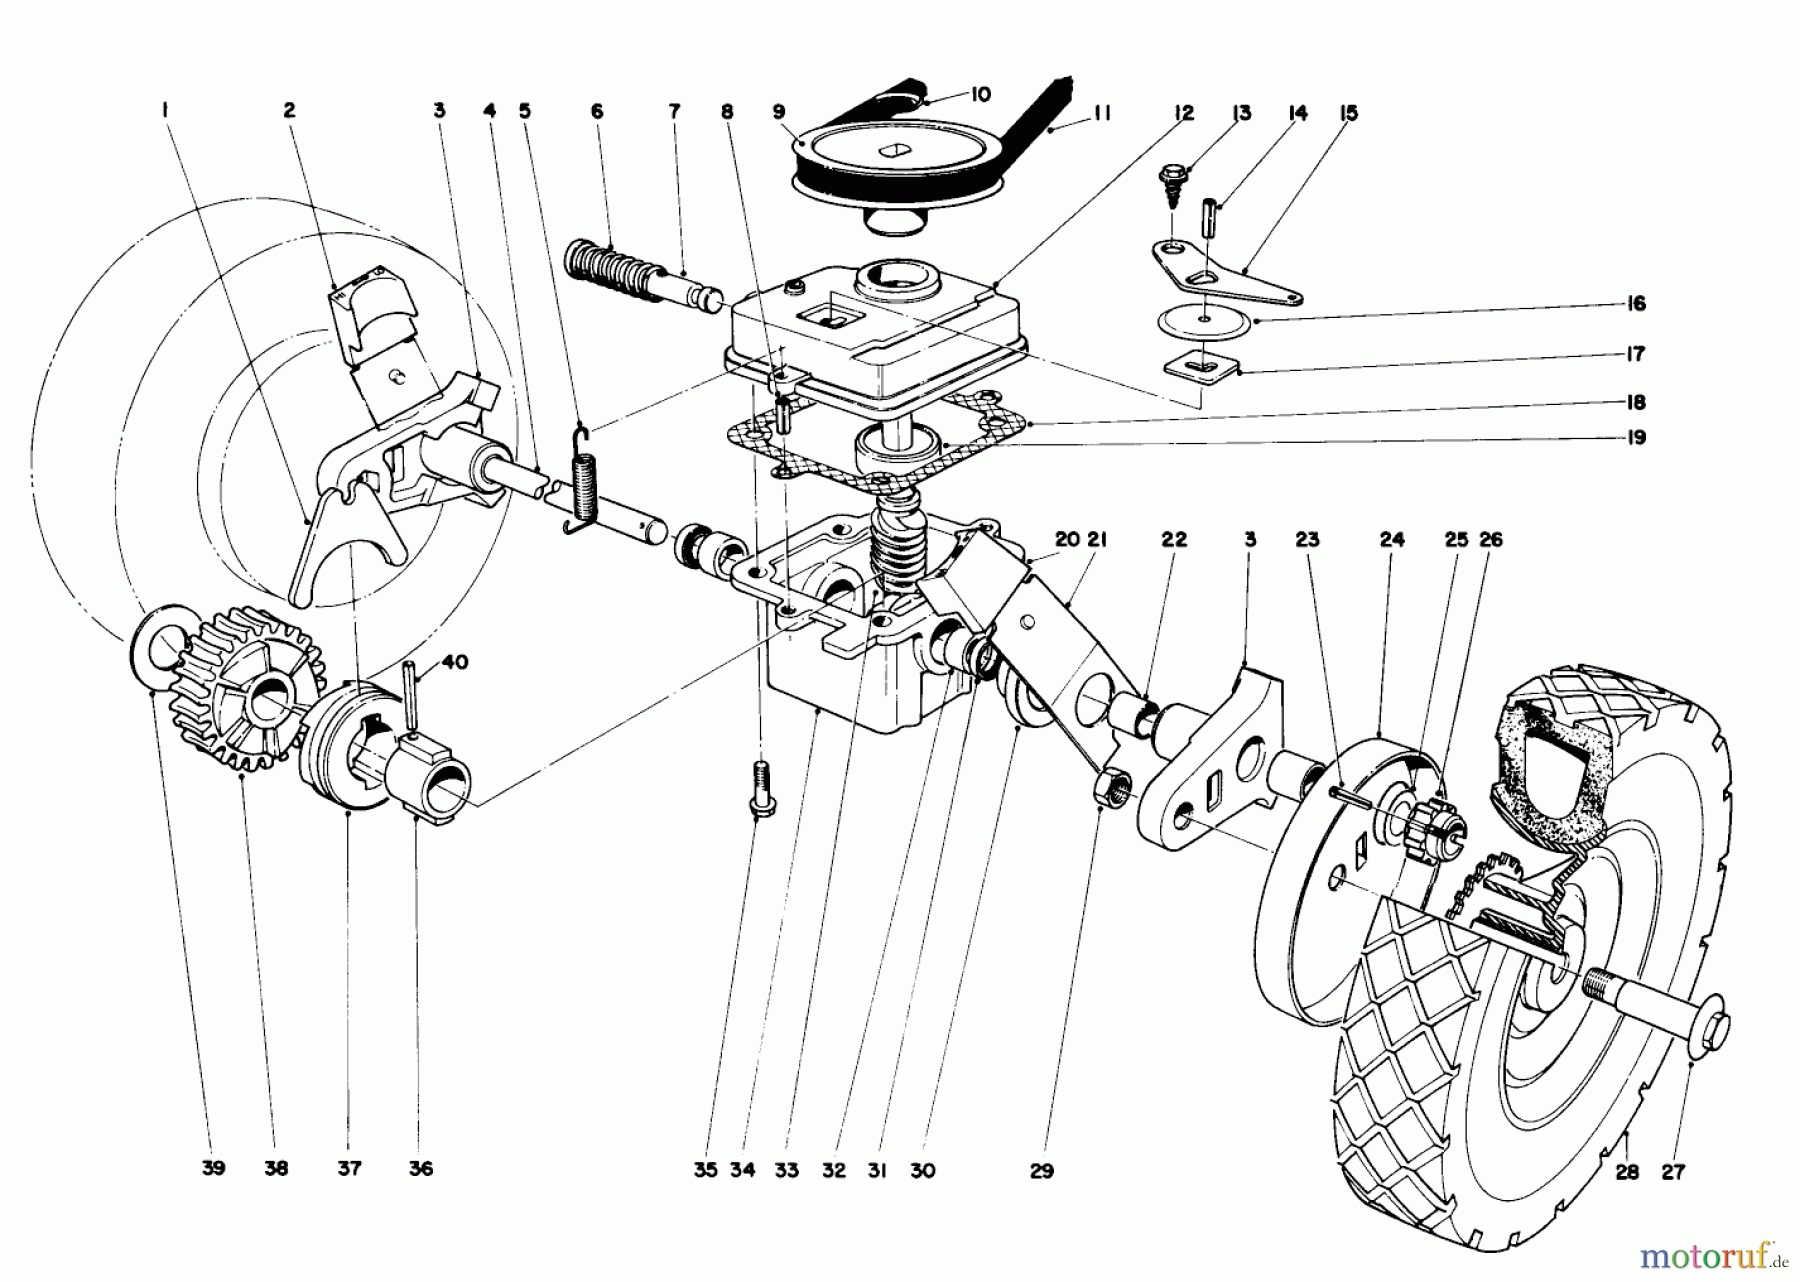  Toro Neu Mowers, Walk-Behind Seite 1 16173 - Toro Whirlwind Lawnmower, 1974 (4000001-4999999) GEAR BOX ASSEMBLY